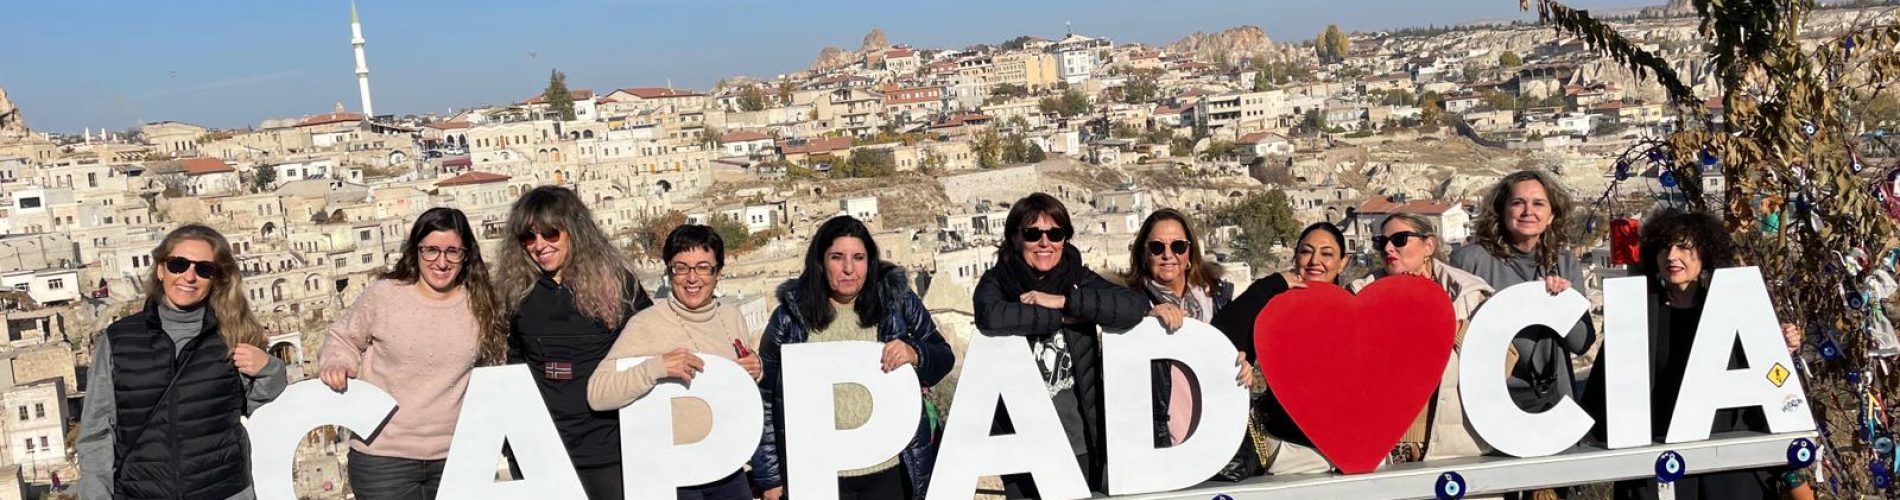 Capadoccia, Turquía, grupo mujeres